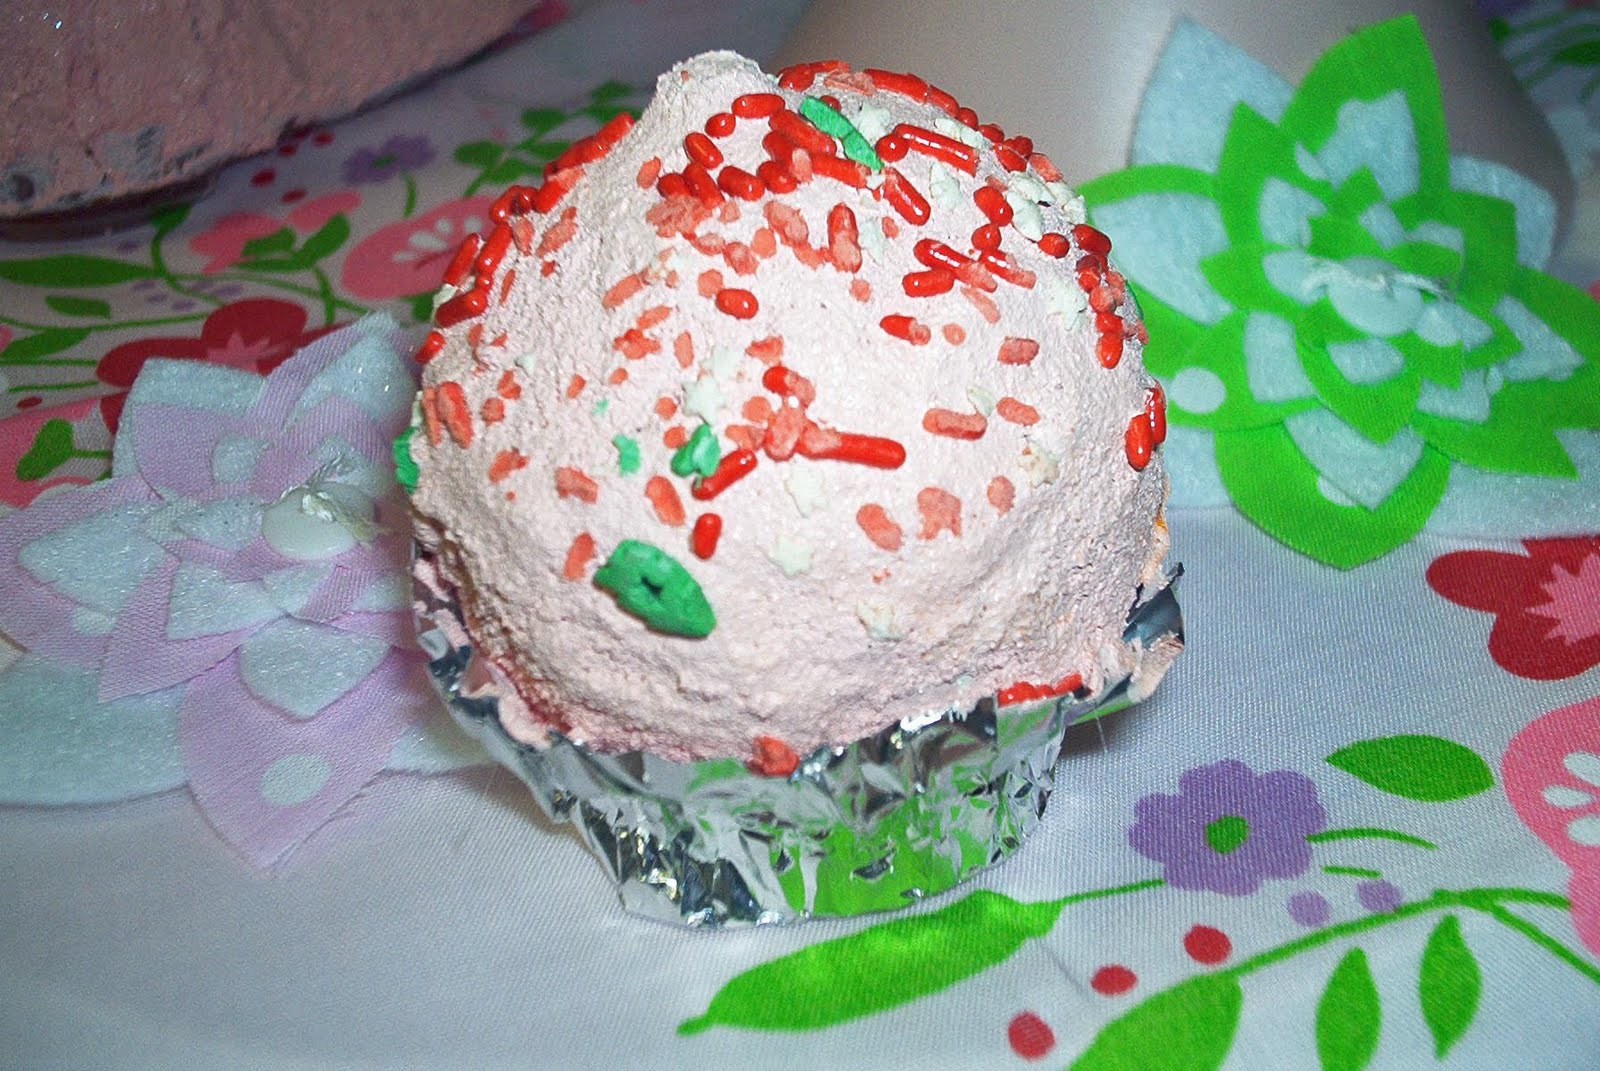 http://1.bp.blogspot.com/_w_6goUVziJs/S8pSIcYLx6I/AAAAAAAAAs4/COdn_6ku6_0/s1600/cupcake+ornament.jpg